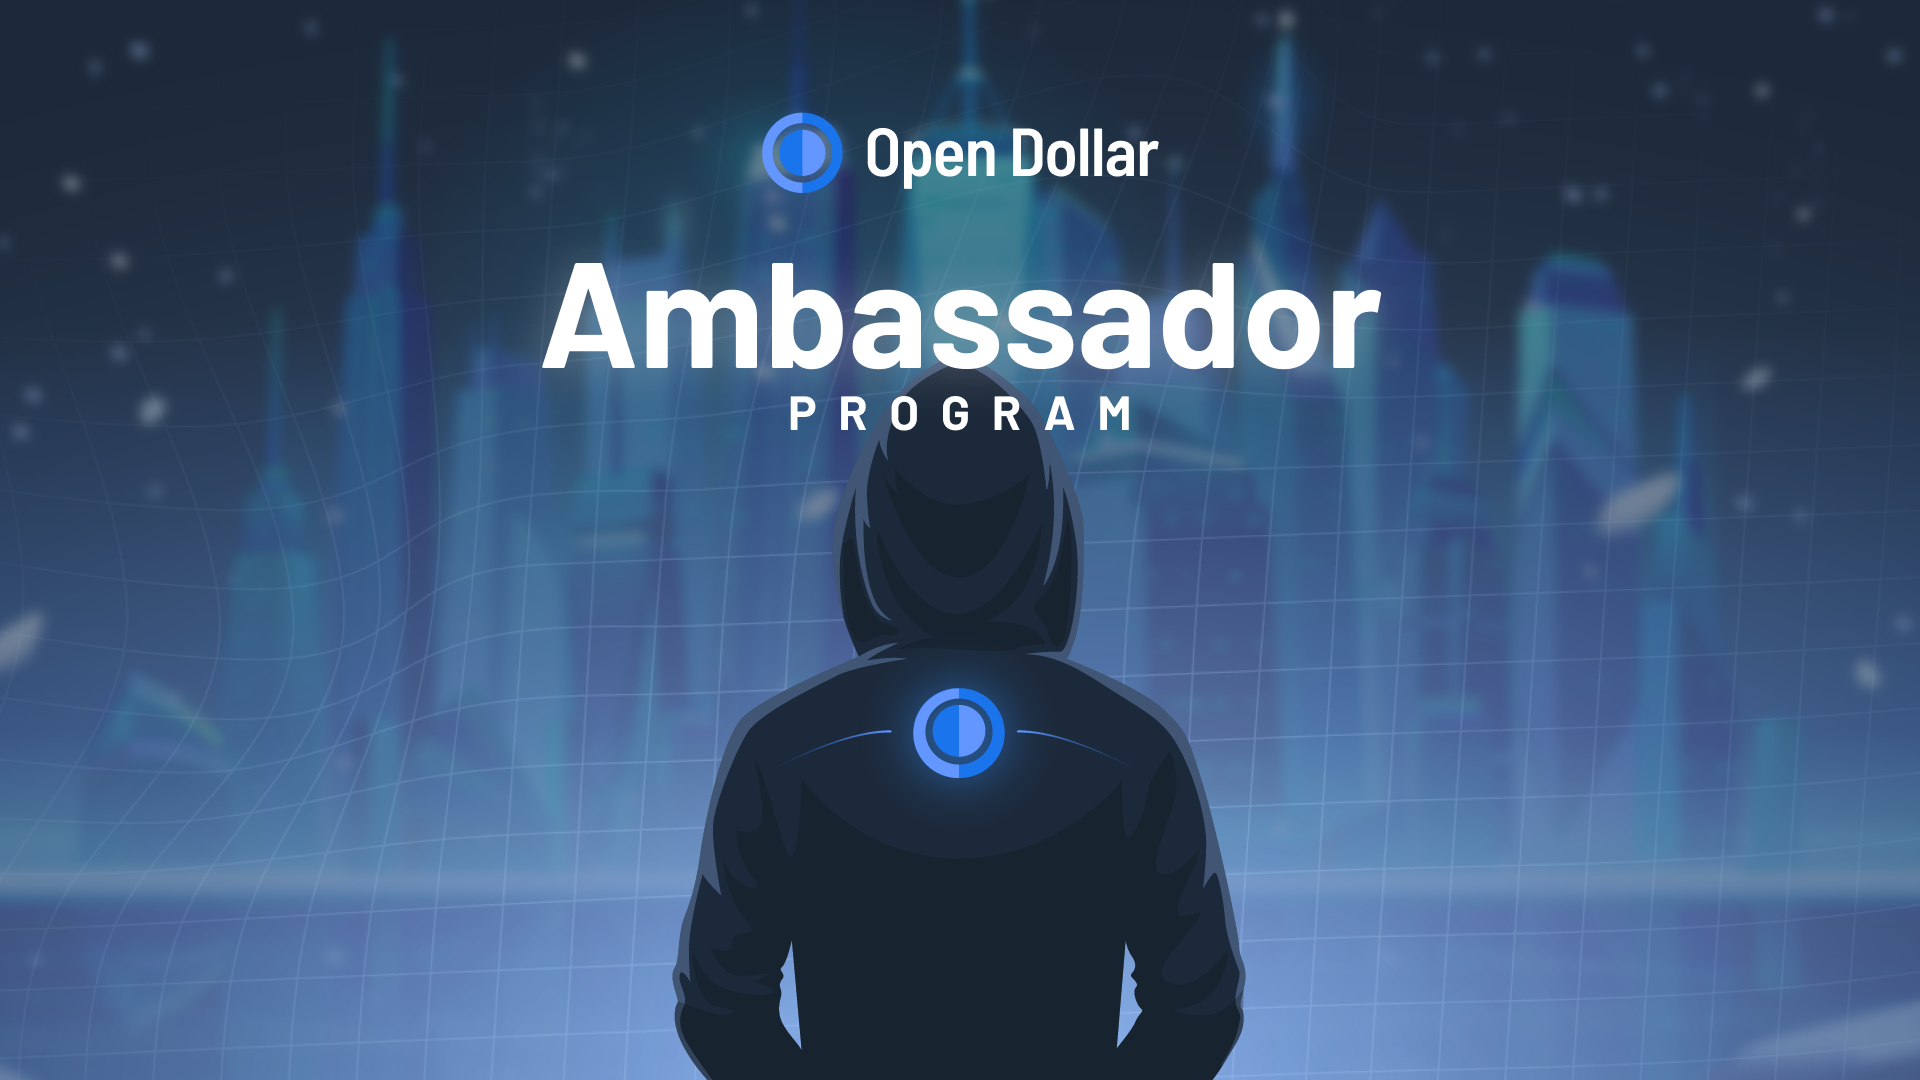 OD Ambassador Program